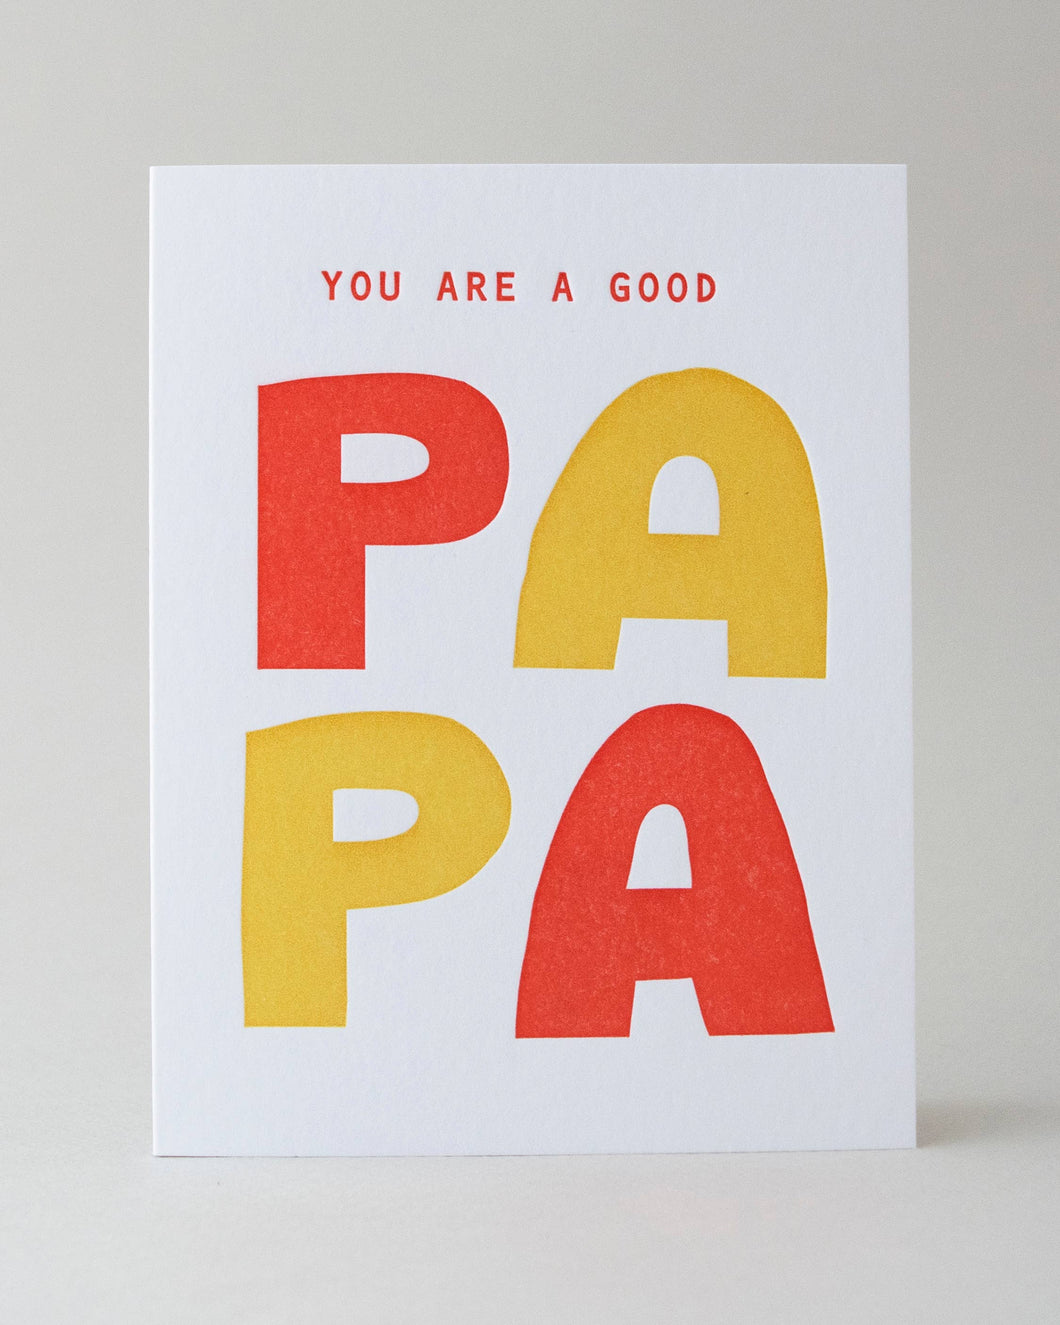 Good Papa Card